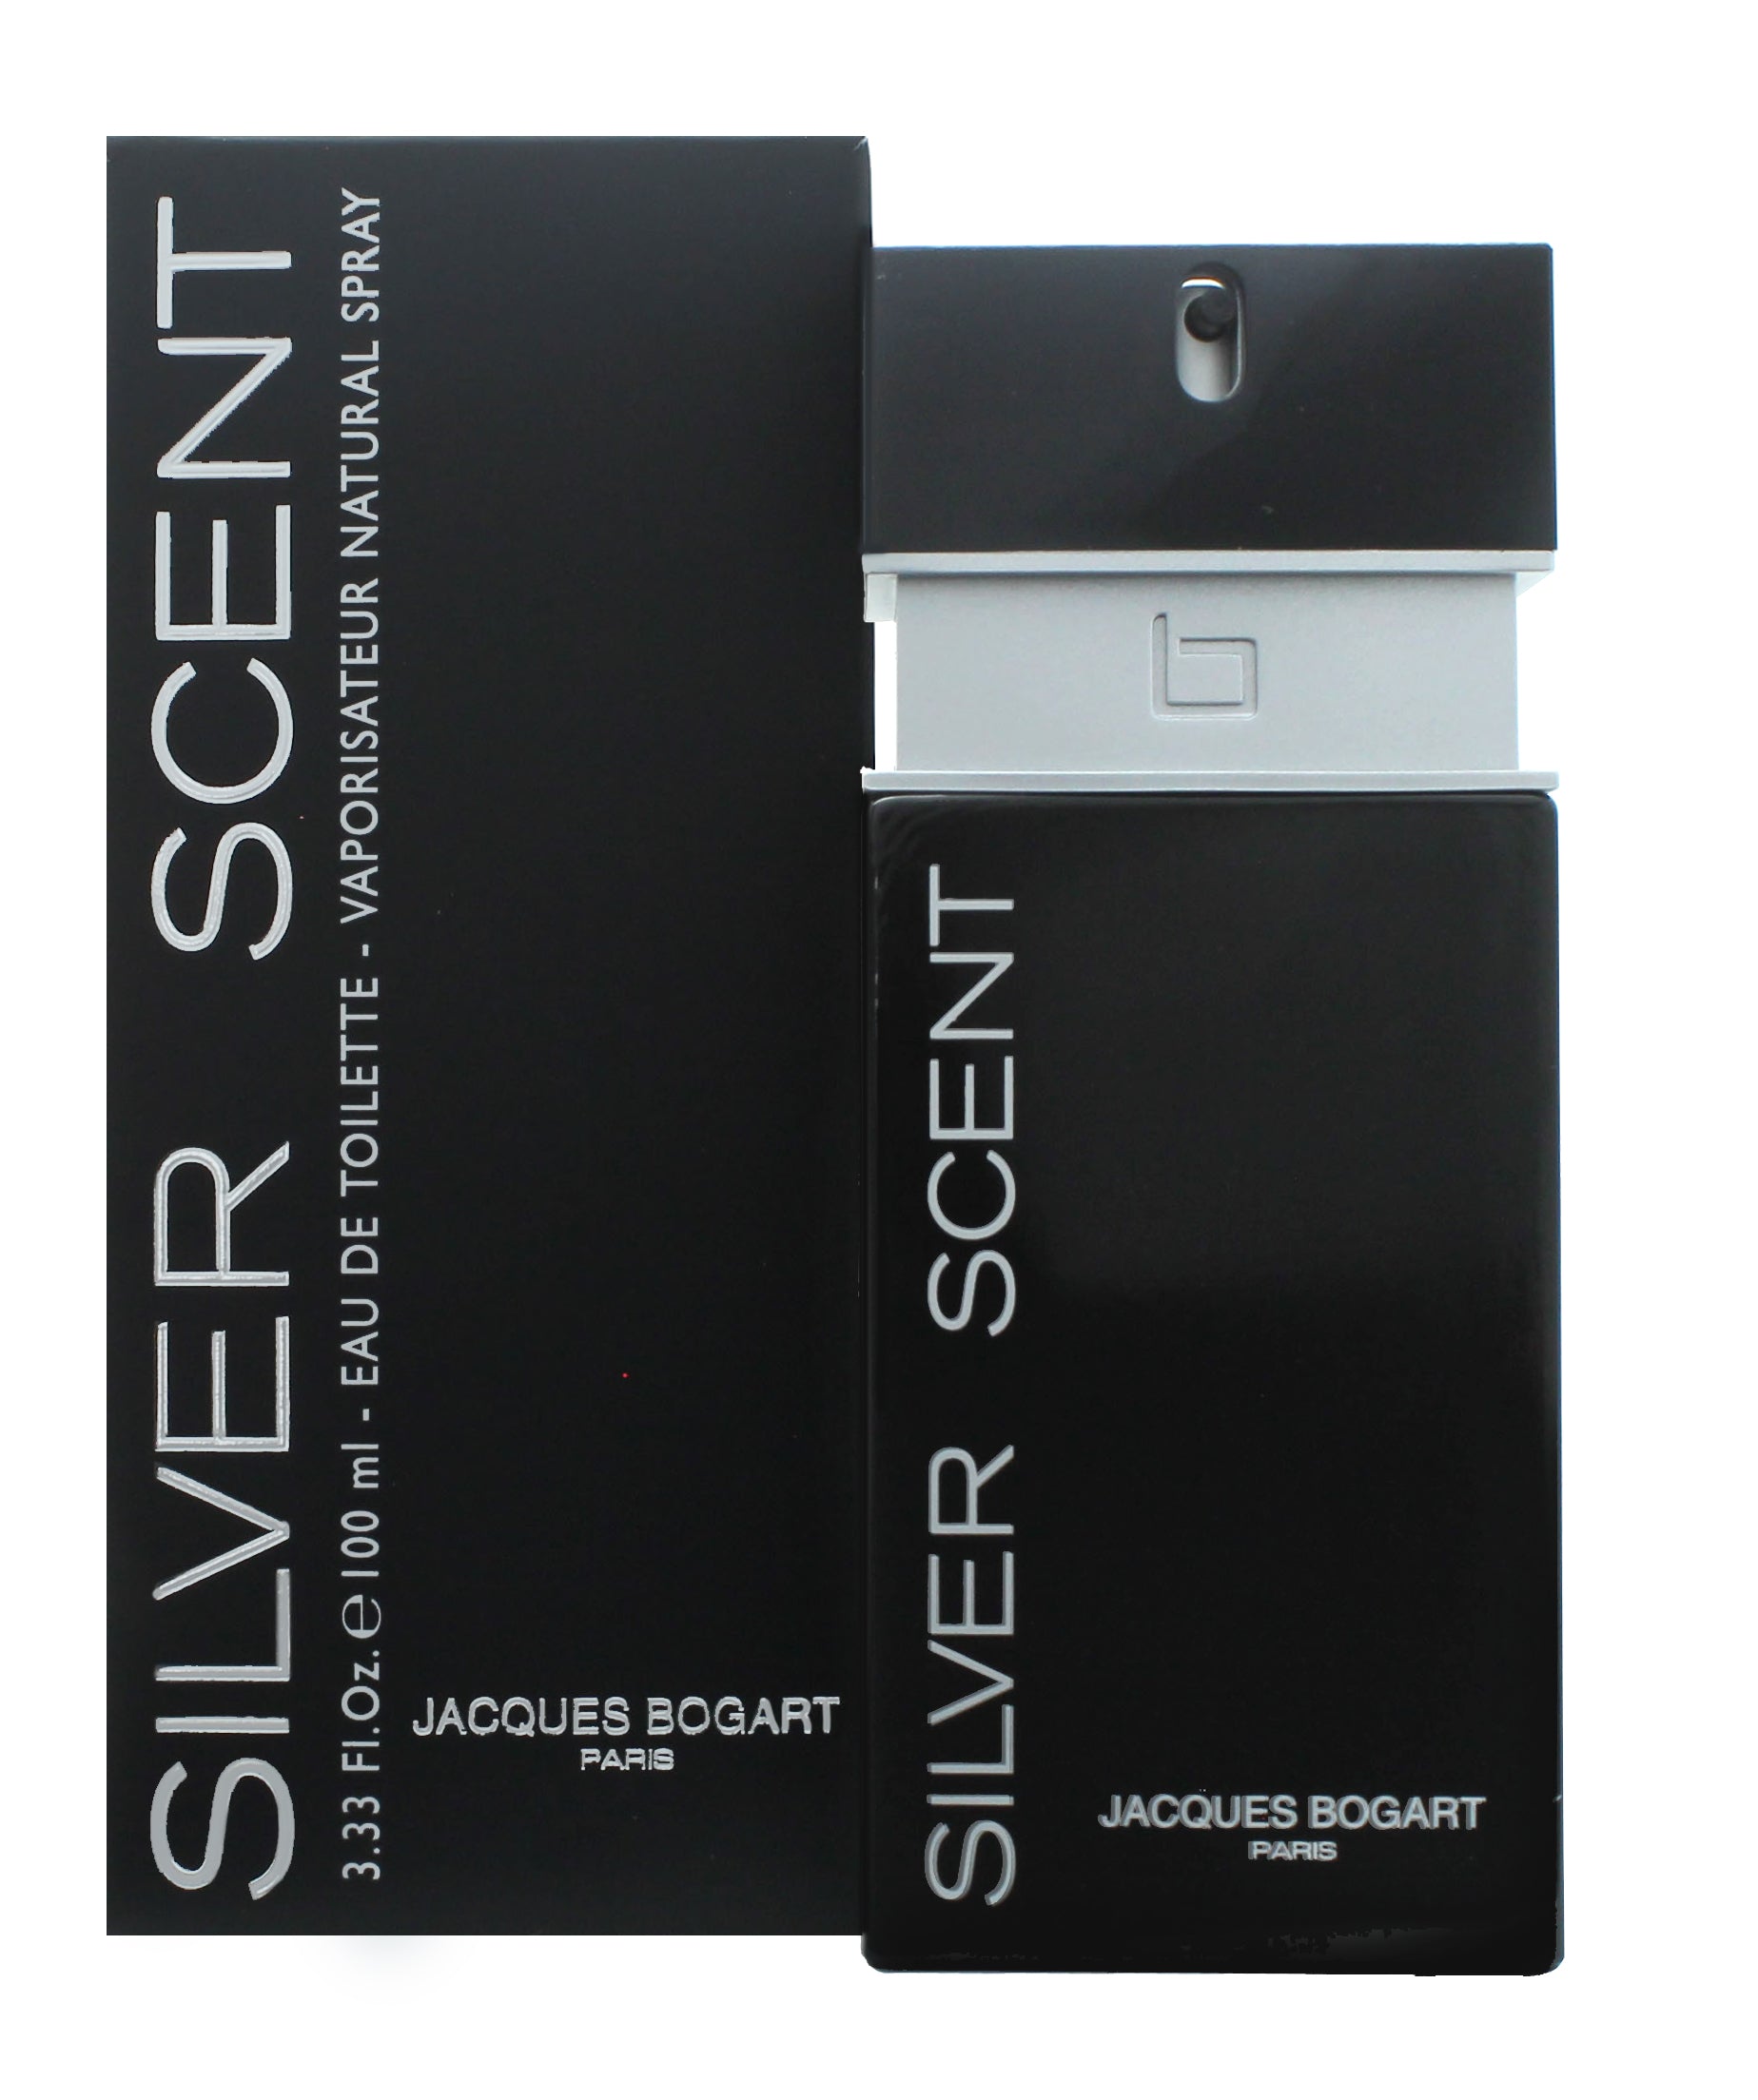 View Jacques Bogart Silver Scent Eau de Toilette 100ml Spray information